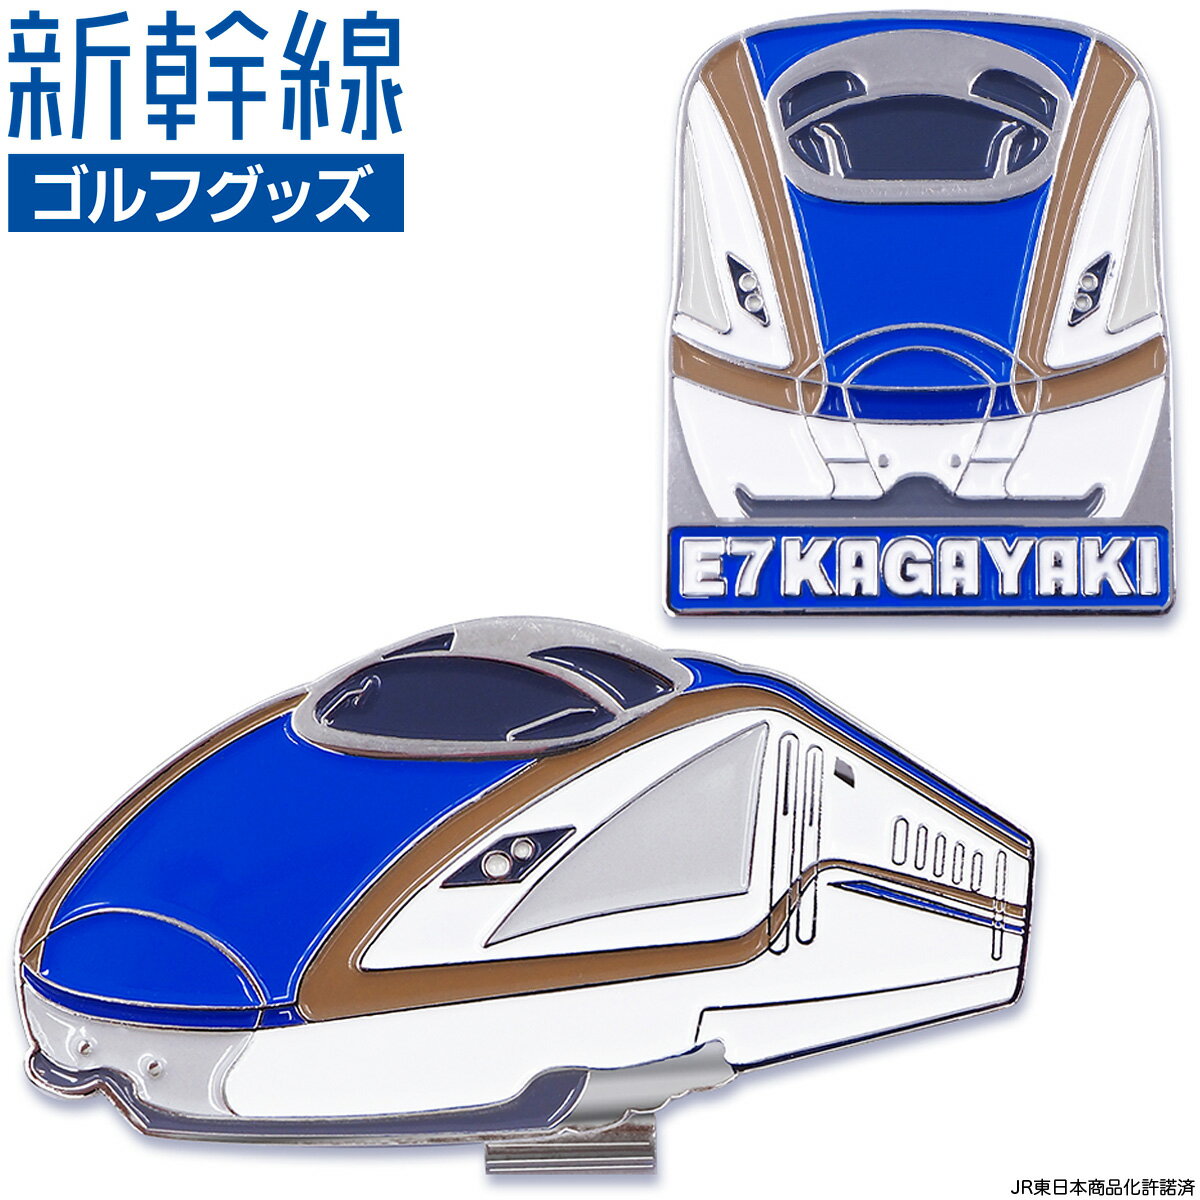 新幹線 E7系 かがやき E7 KAGAYAKI ゴルフマーカー ( クリップタイプ ) 「 SKSM005 」 【あす楽対応】